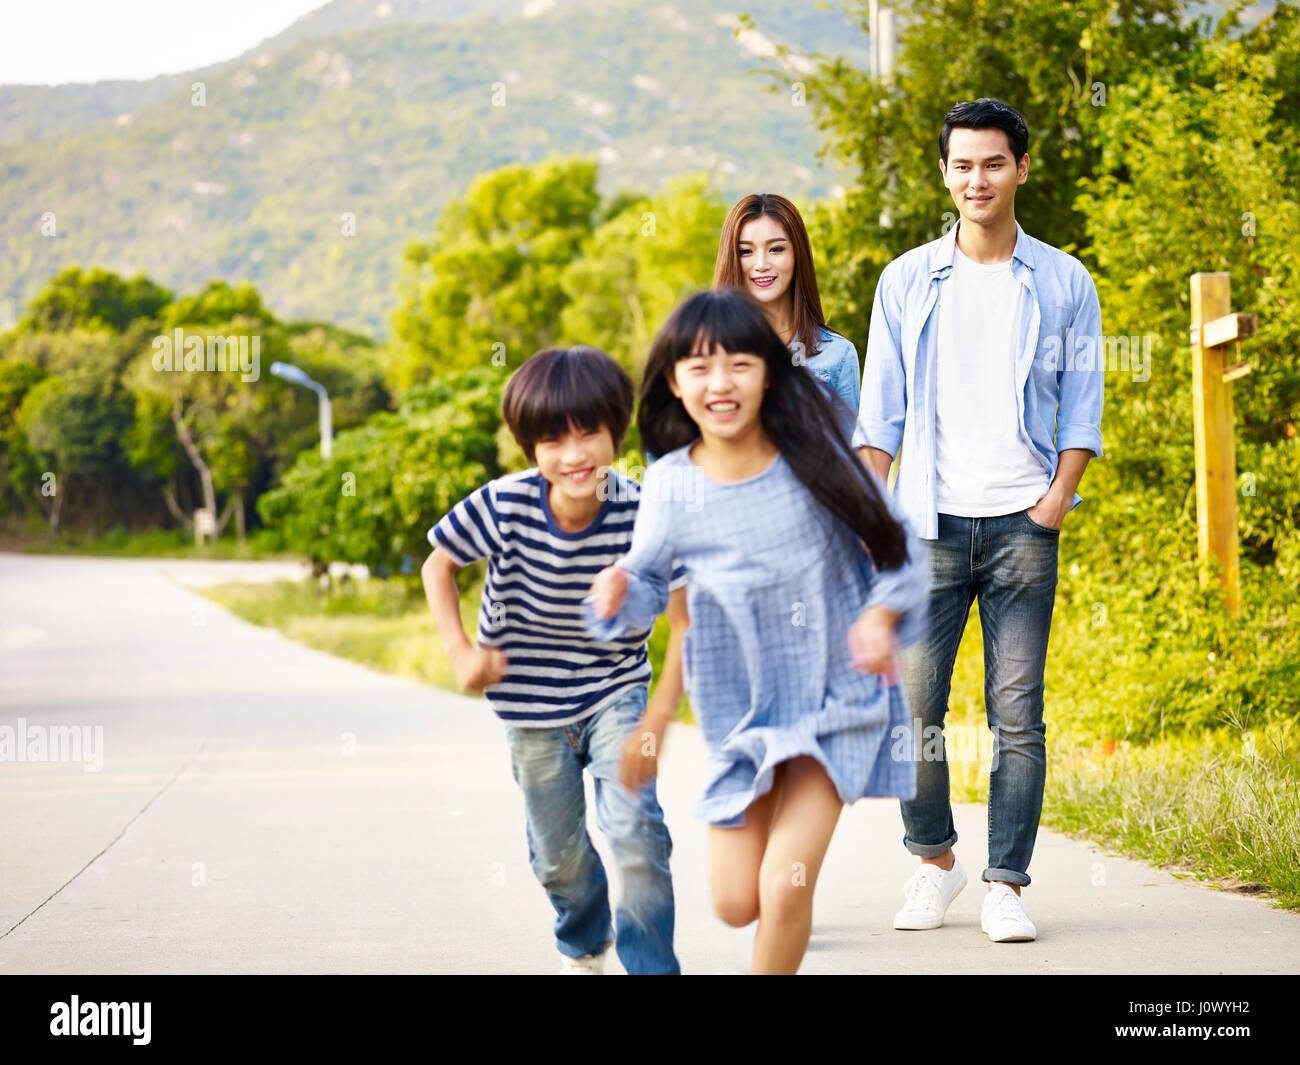 Deux enfants asiatiques running in park pendant que leurs parents regardant affectueusement. Banque D'Images